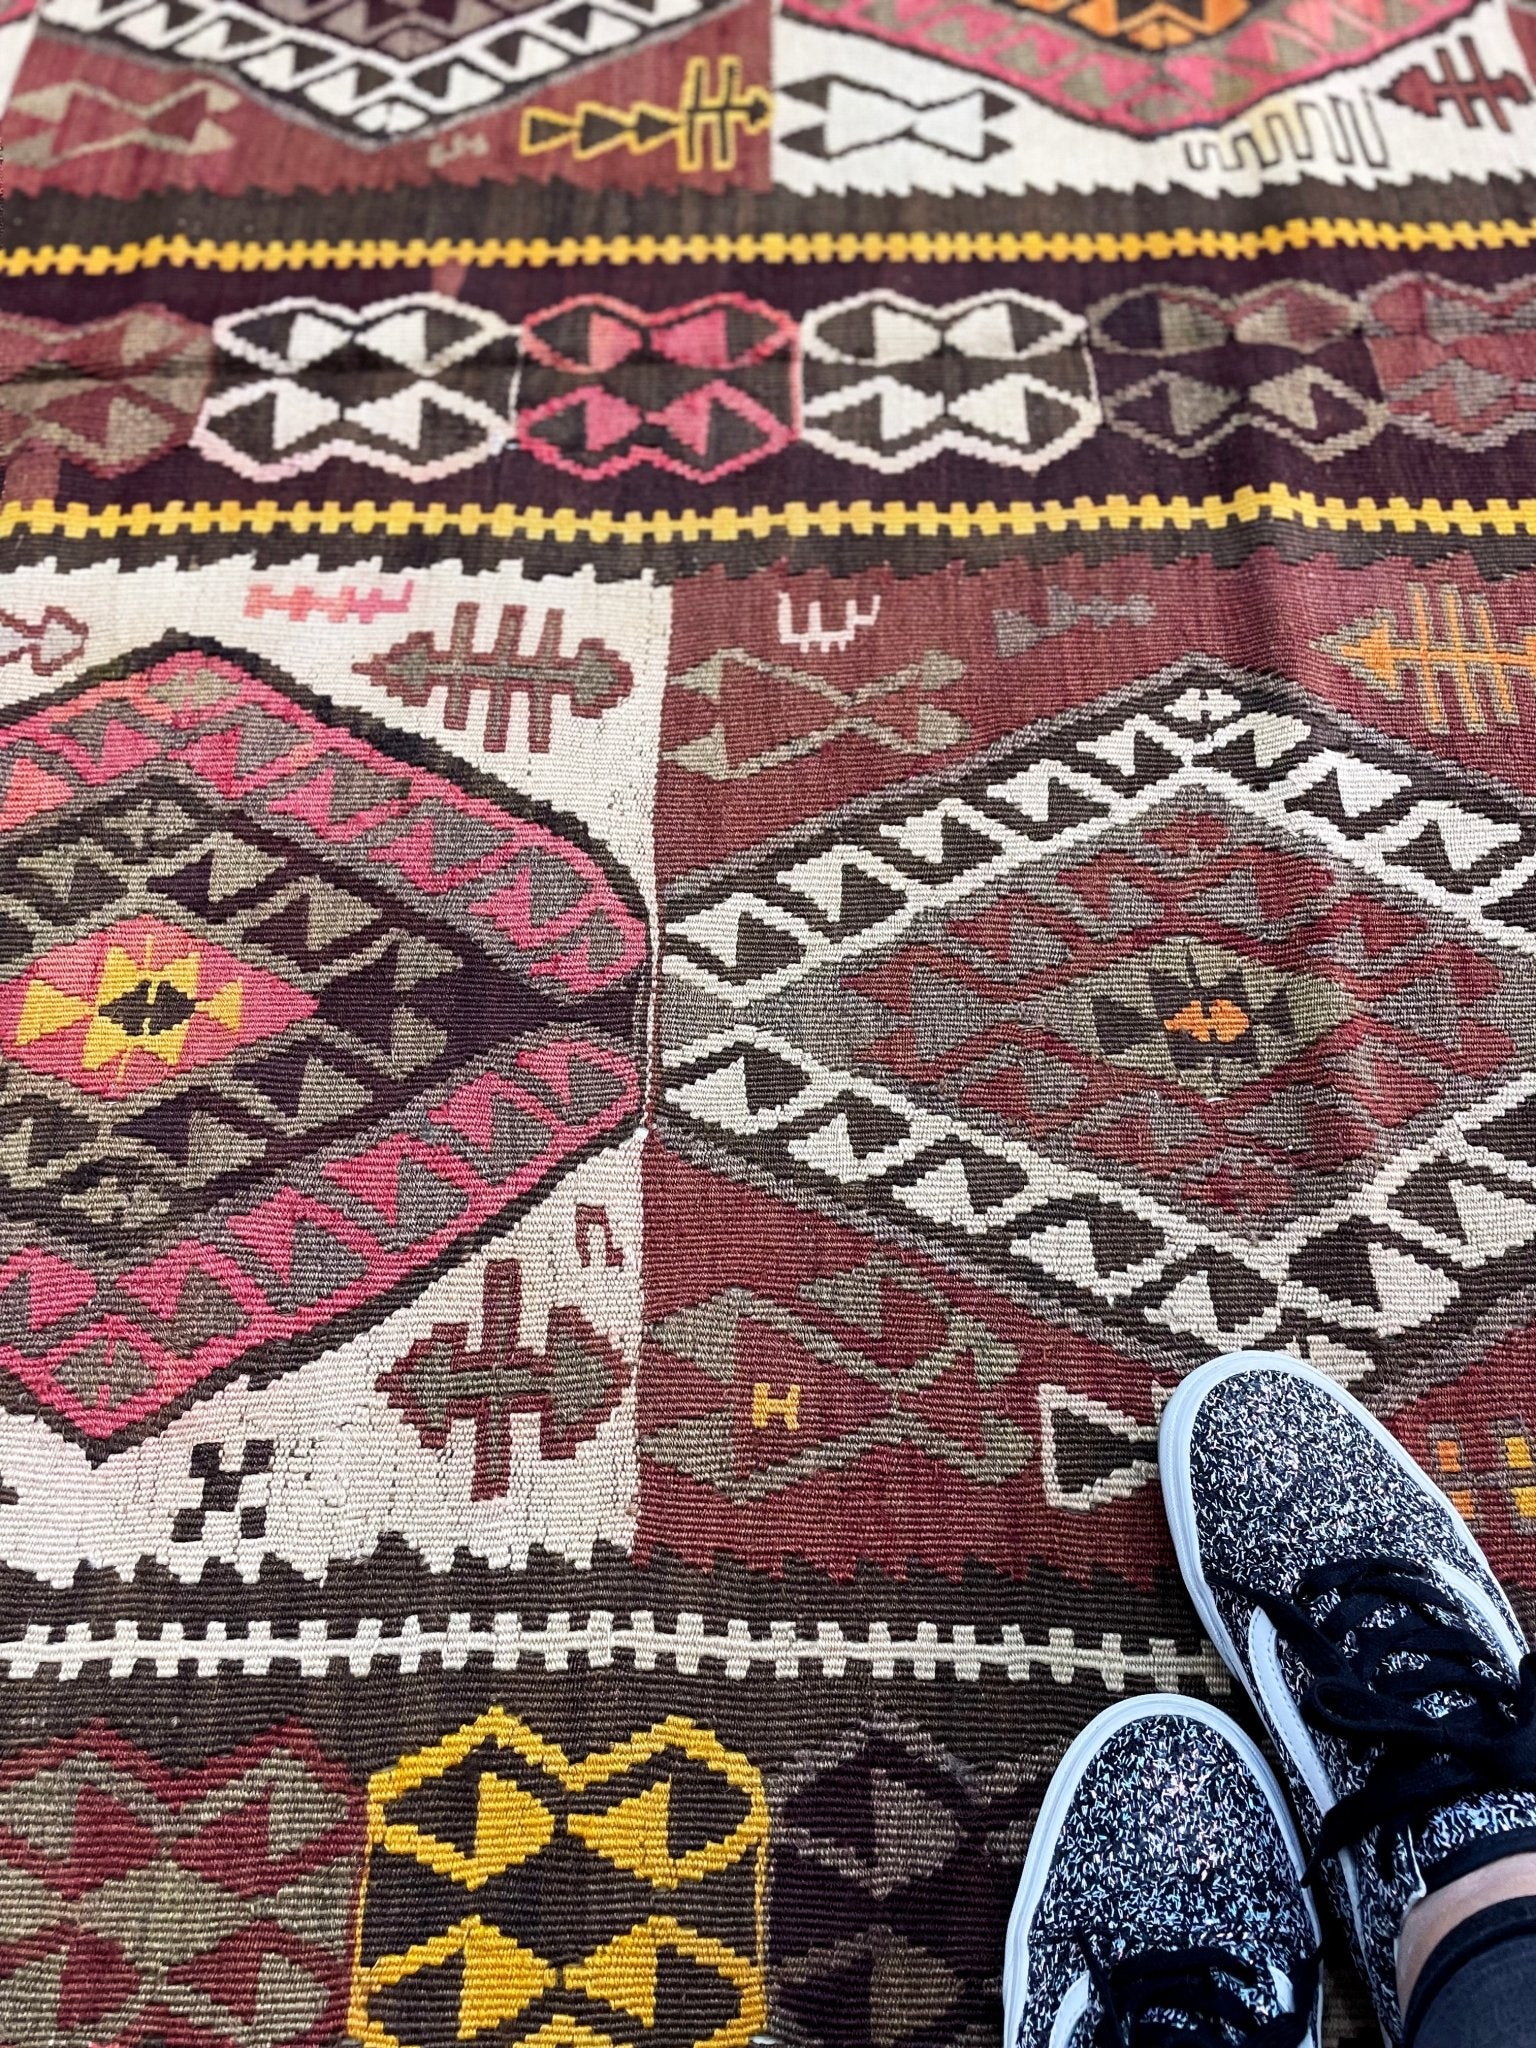 turkish kilim rug shop san francisco bay area. Handmade wool rug buy online